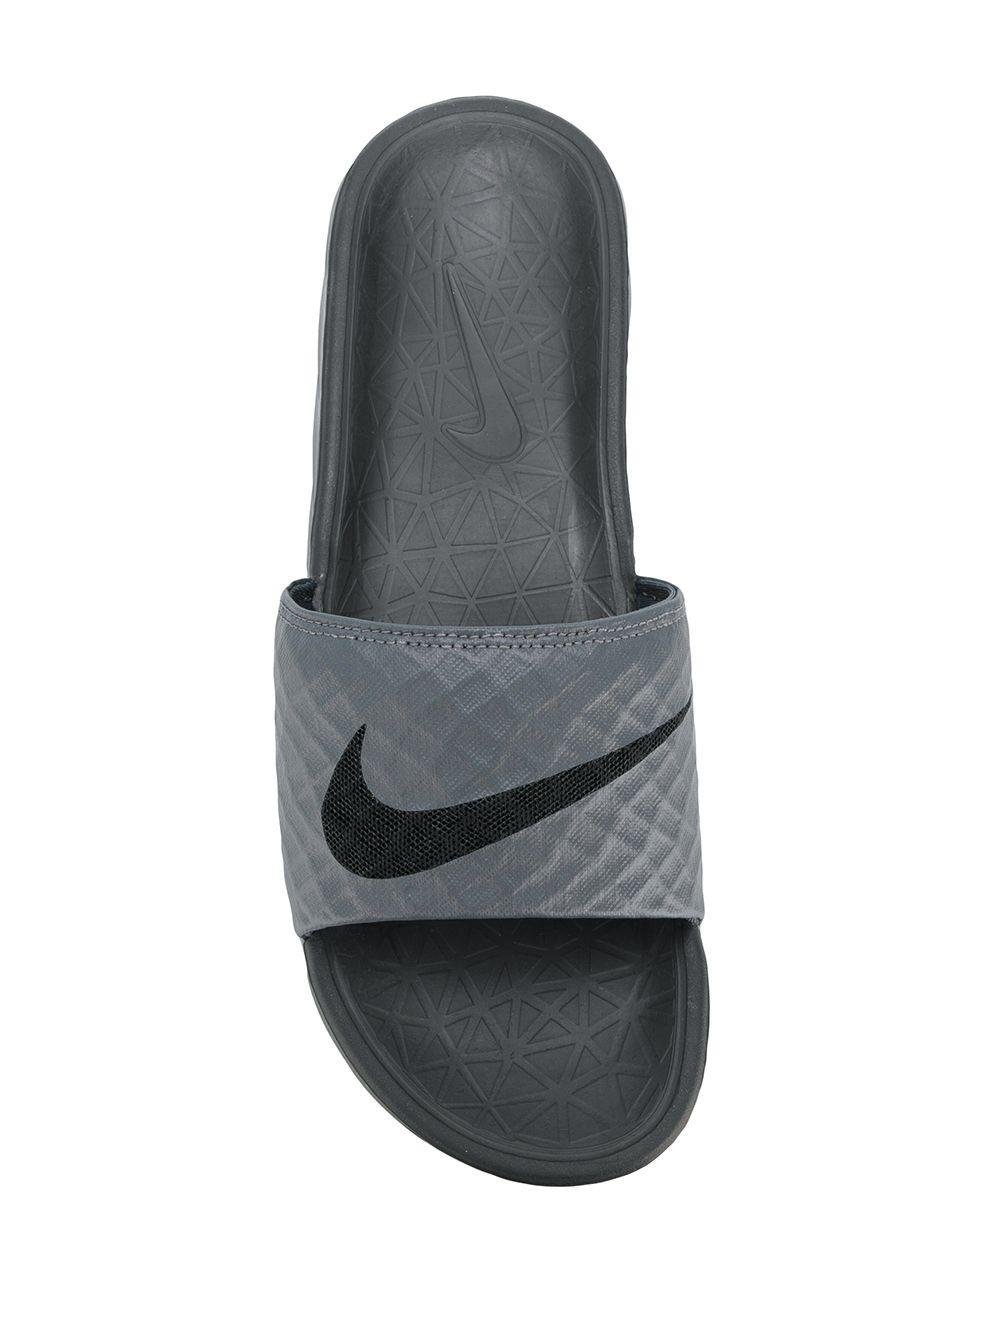 Nike Rubber Benassi Slides in Grey (Gray) for Men - Lyst